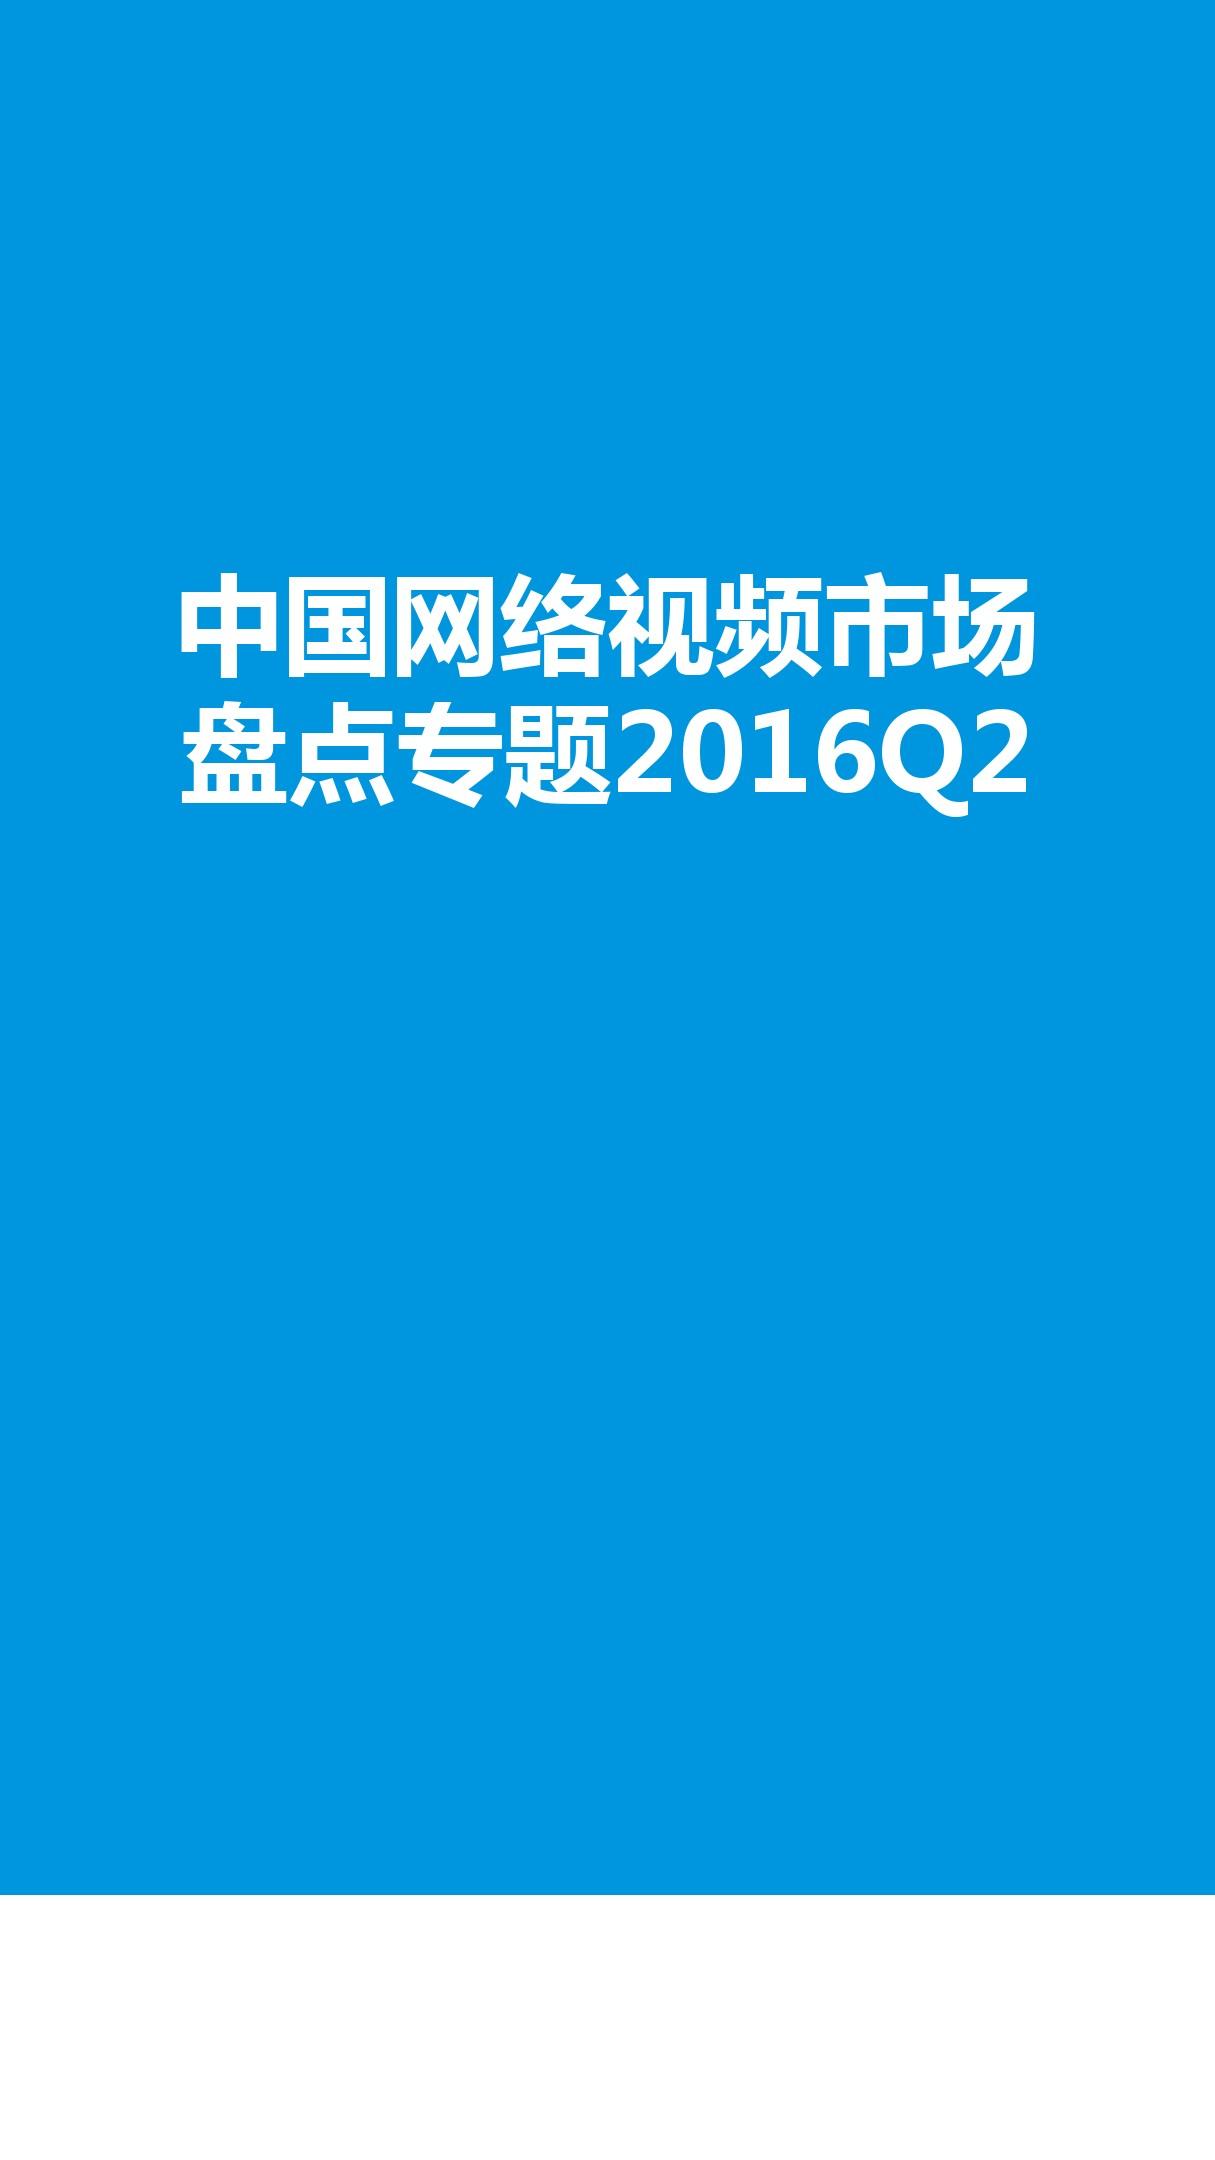 2016年Q2中国网络视频市场盘点专题研究报告